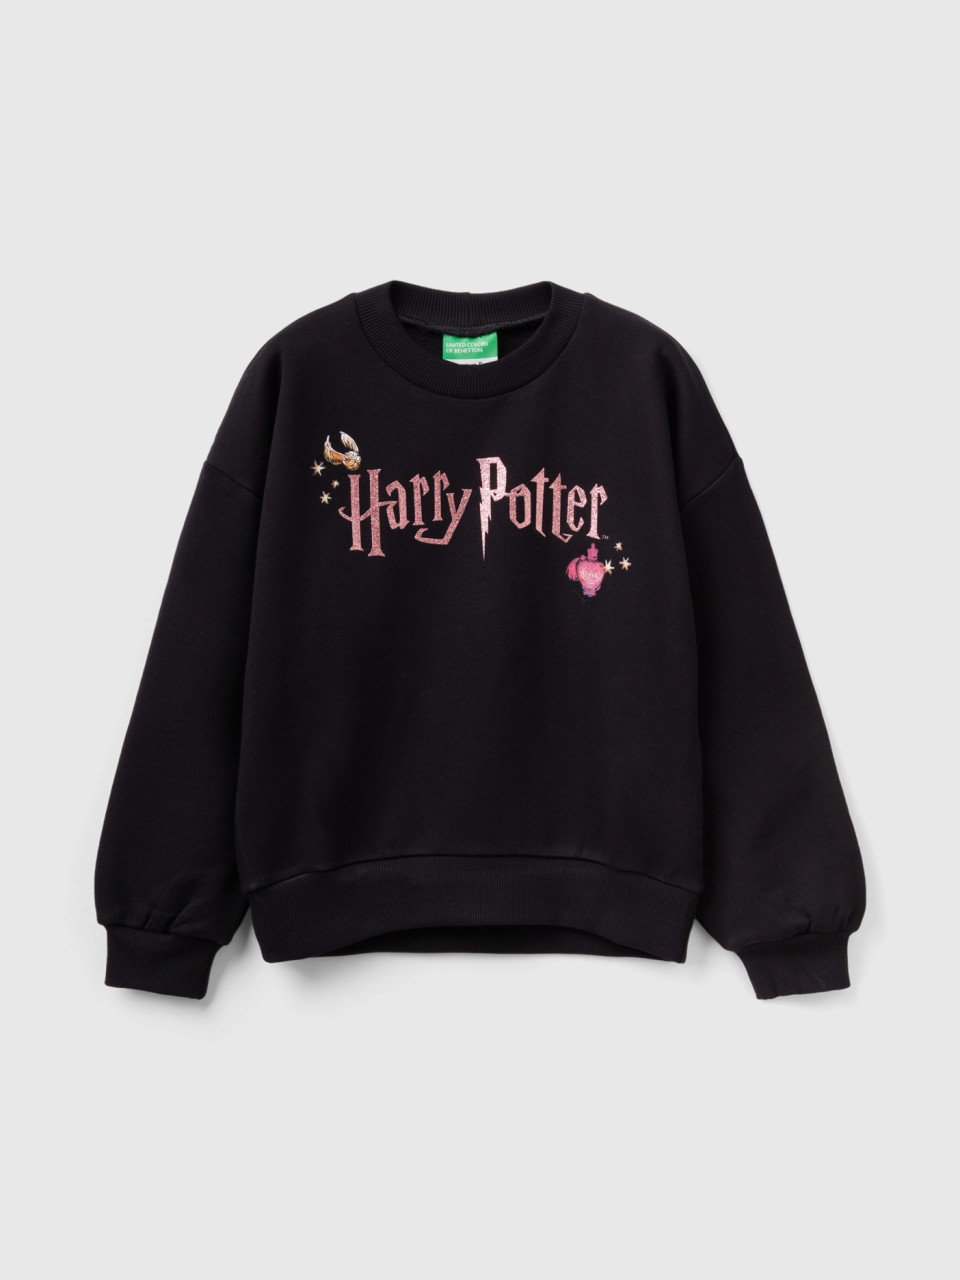 Benetton, Harry Potter - Sweater Mit Glitter, Schwarz, female